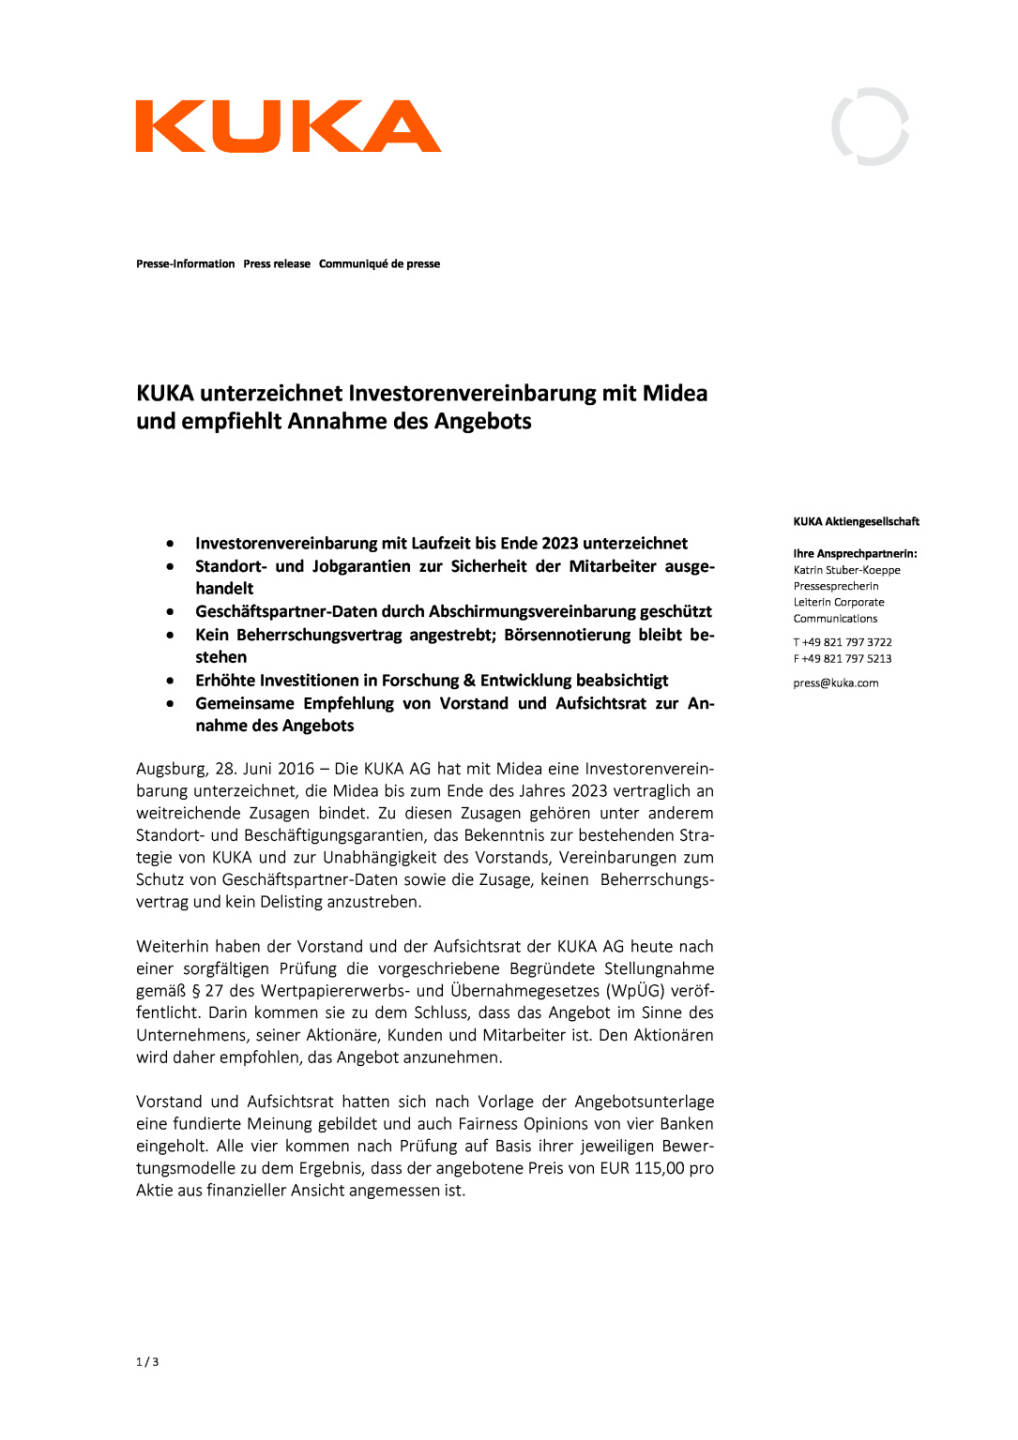 Kuka unterzeichnet Investorenvereinbarung, Seite 1/3, komplettes Dokument unter http://boerse-social.com/static/uploads/file_1287_kuka_unterzeichnet_investorenvereinbarung.pdf